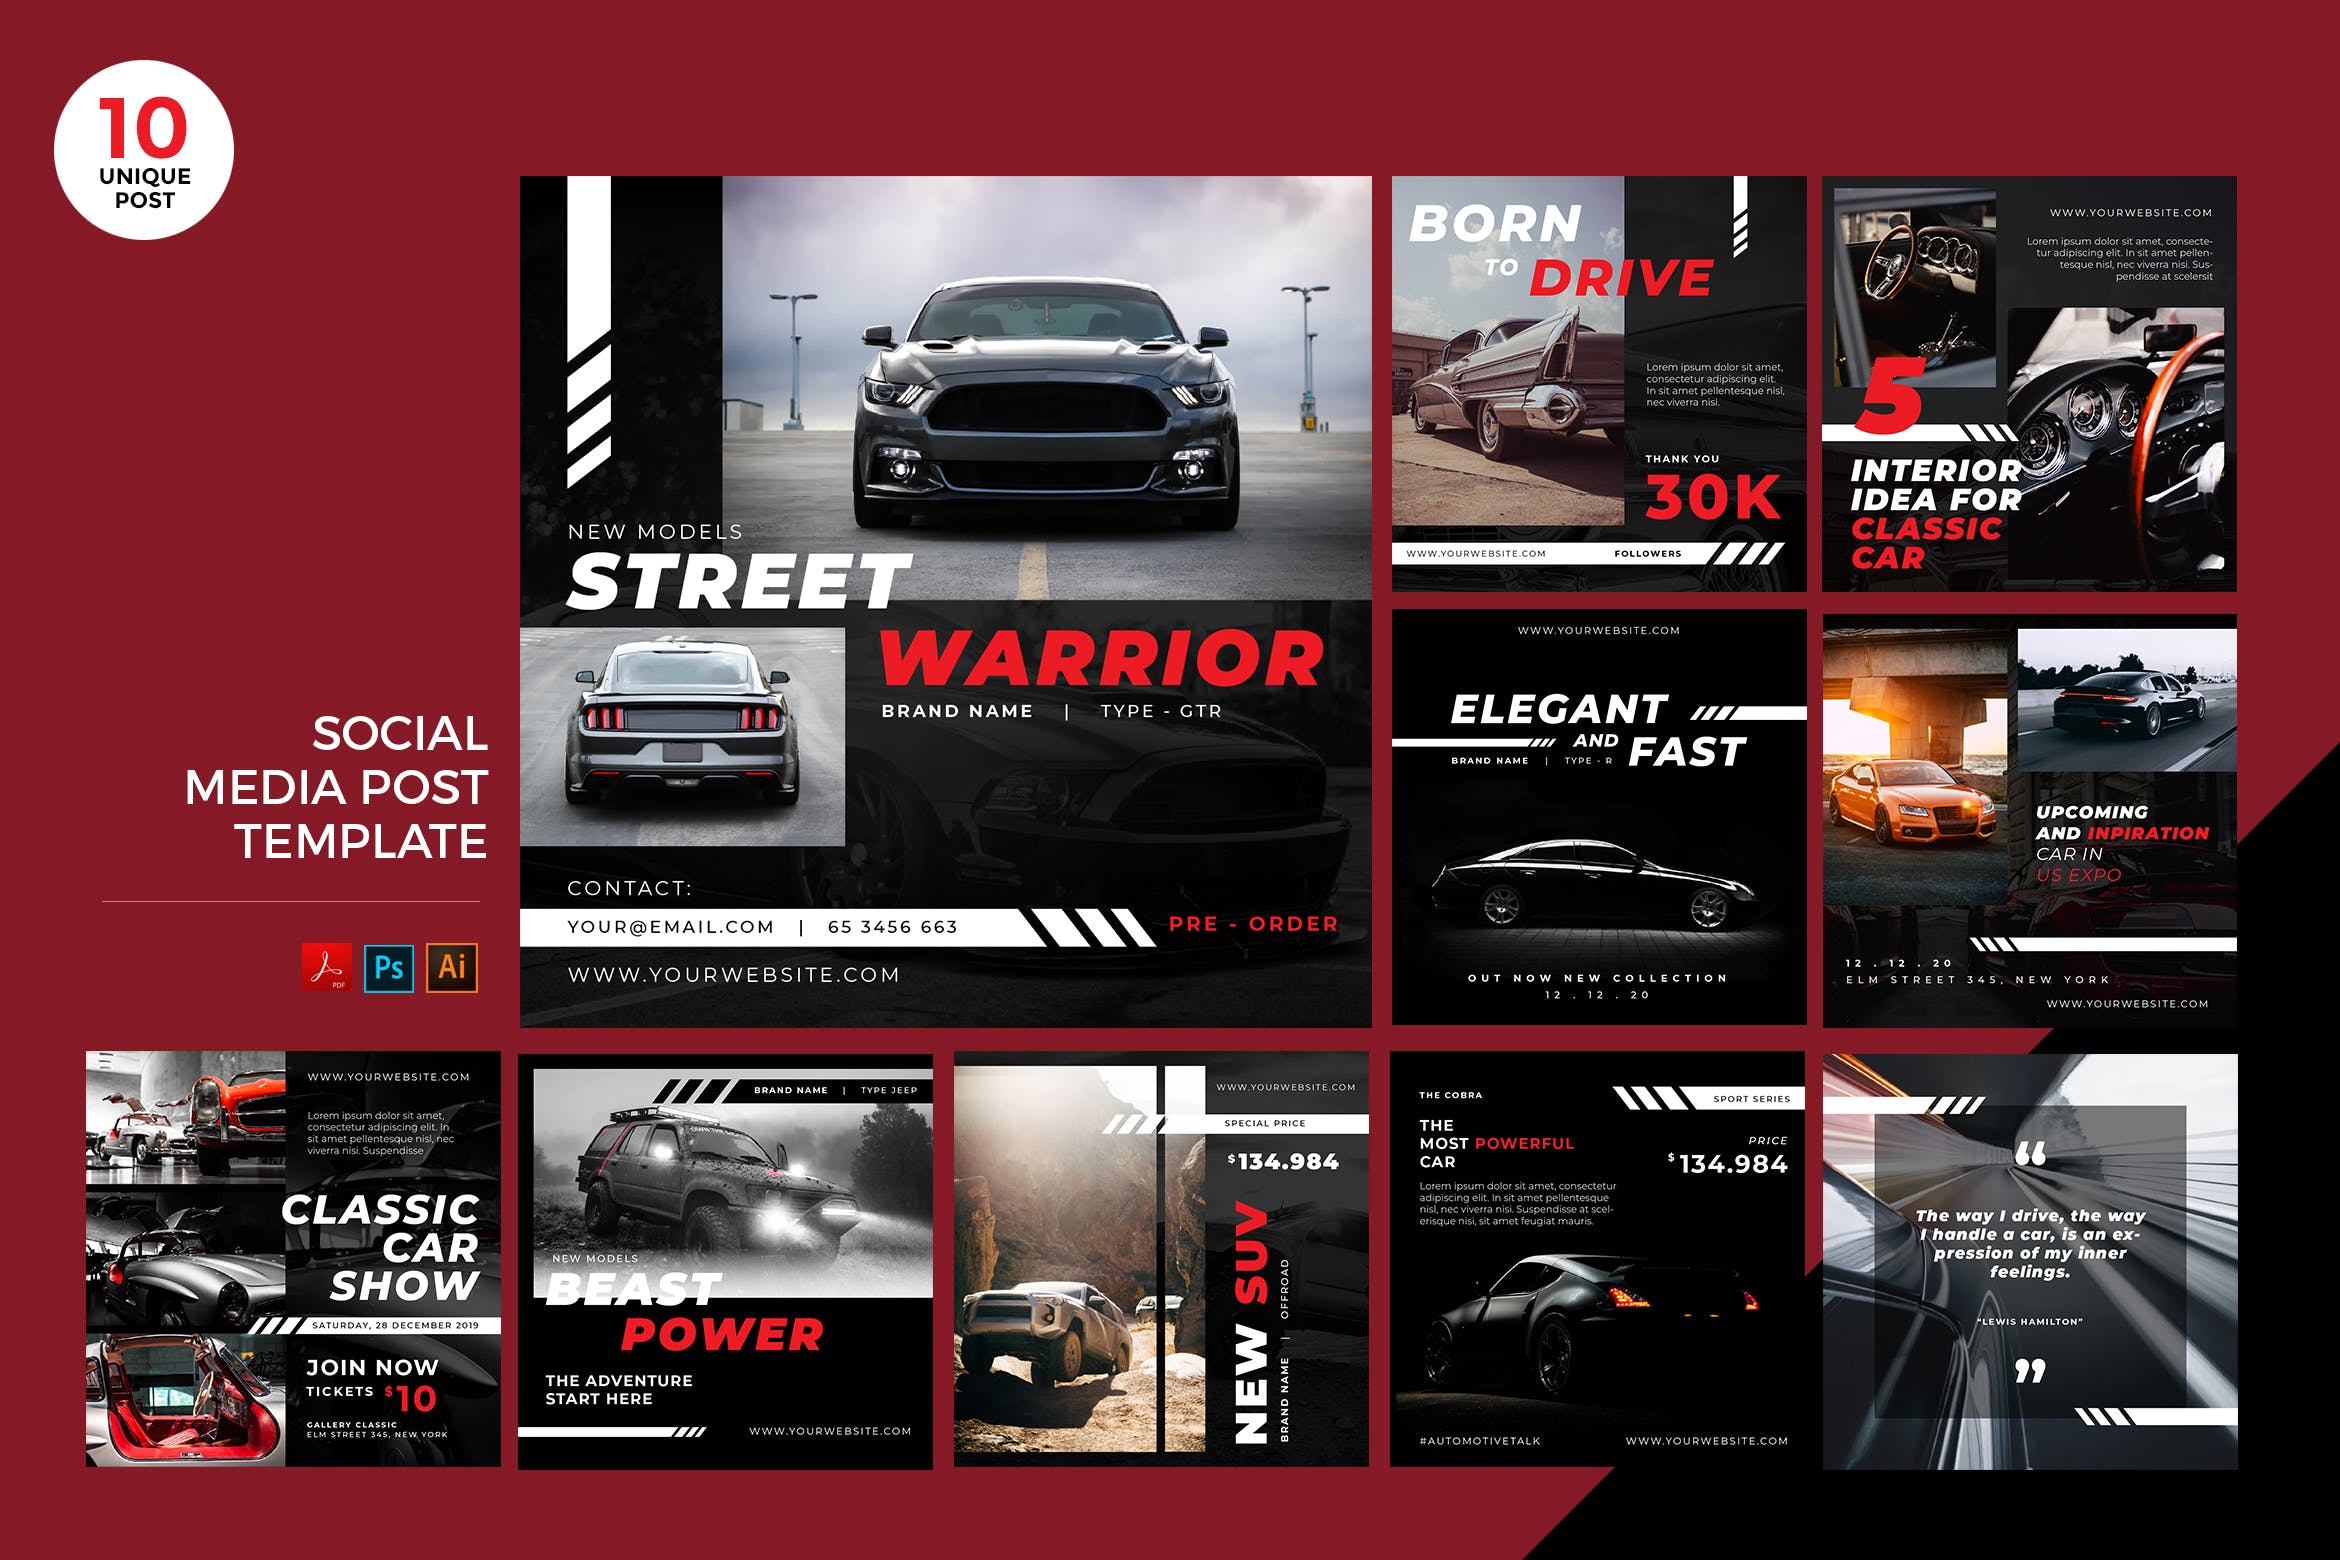 汽车品牌营销社交媒体设计素材包 Car Automotive Social Media Kit PSD & AI Template插图